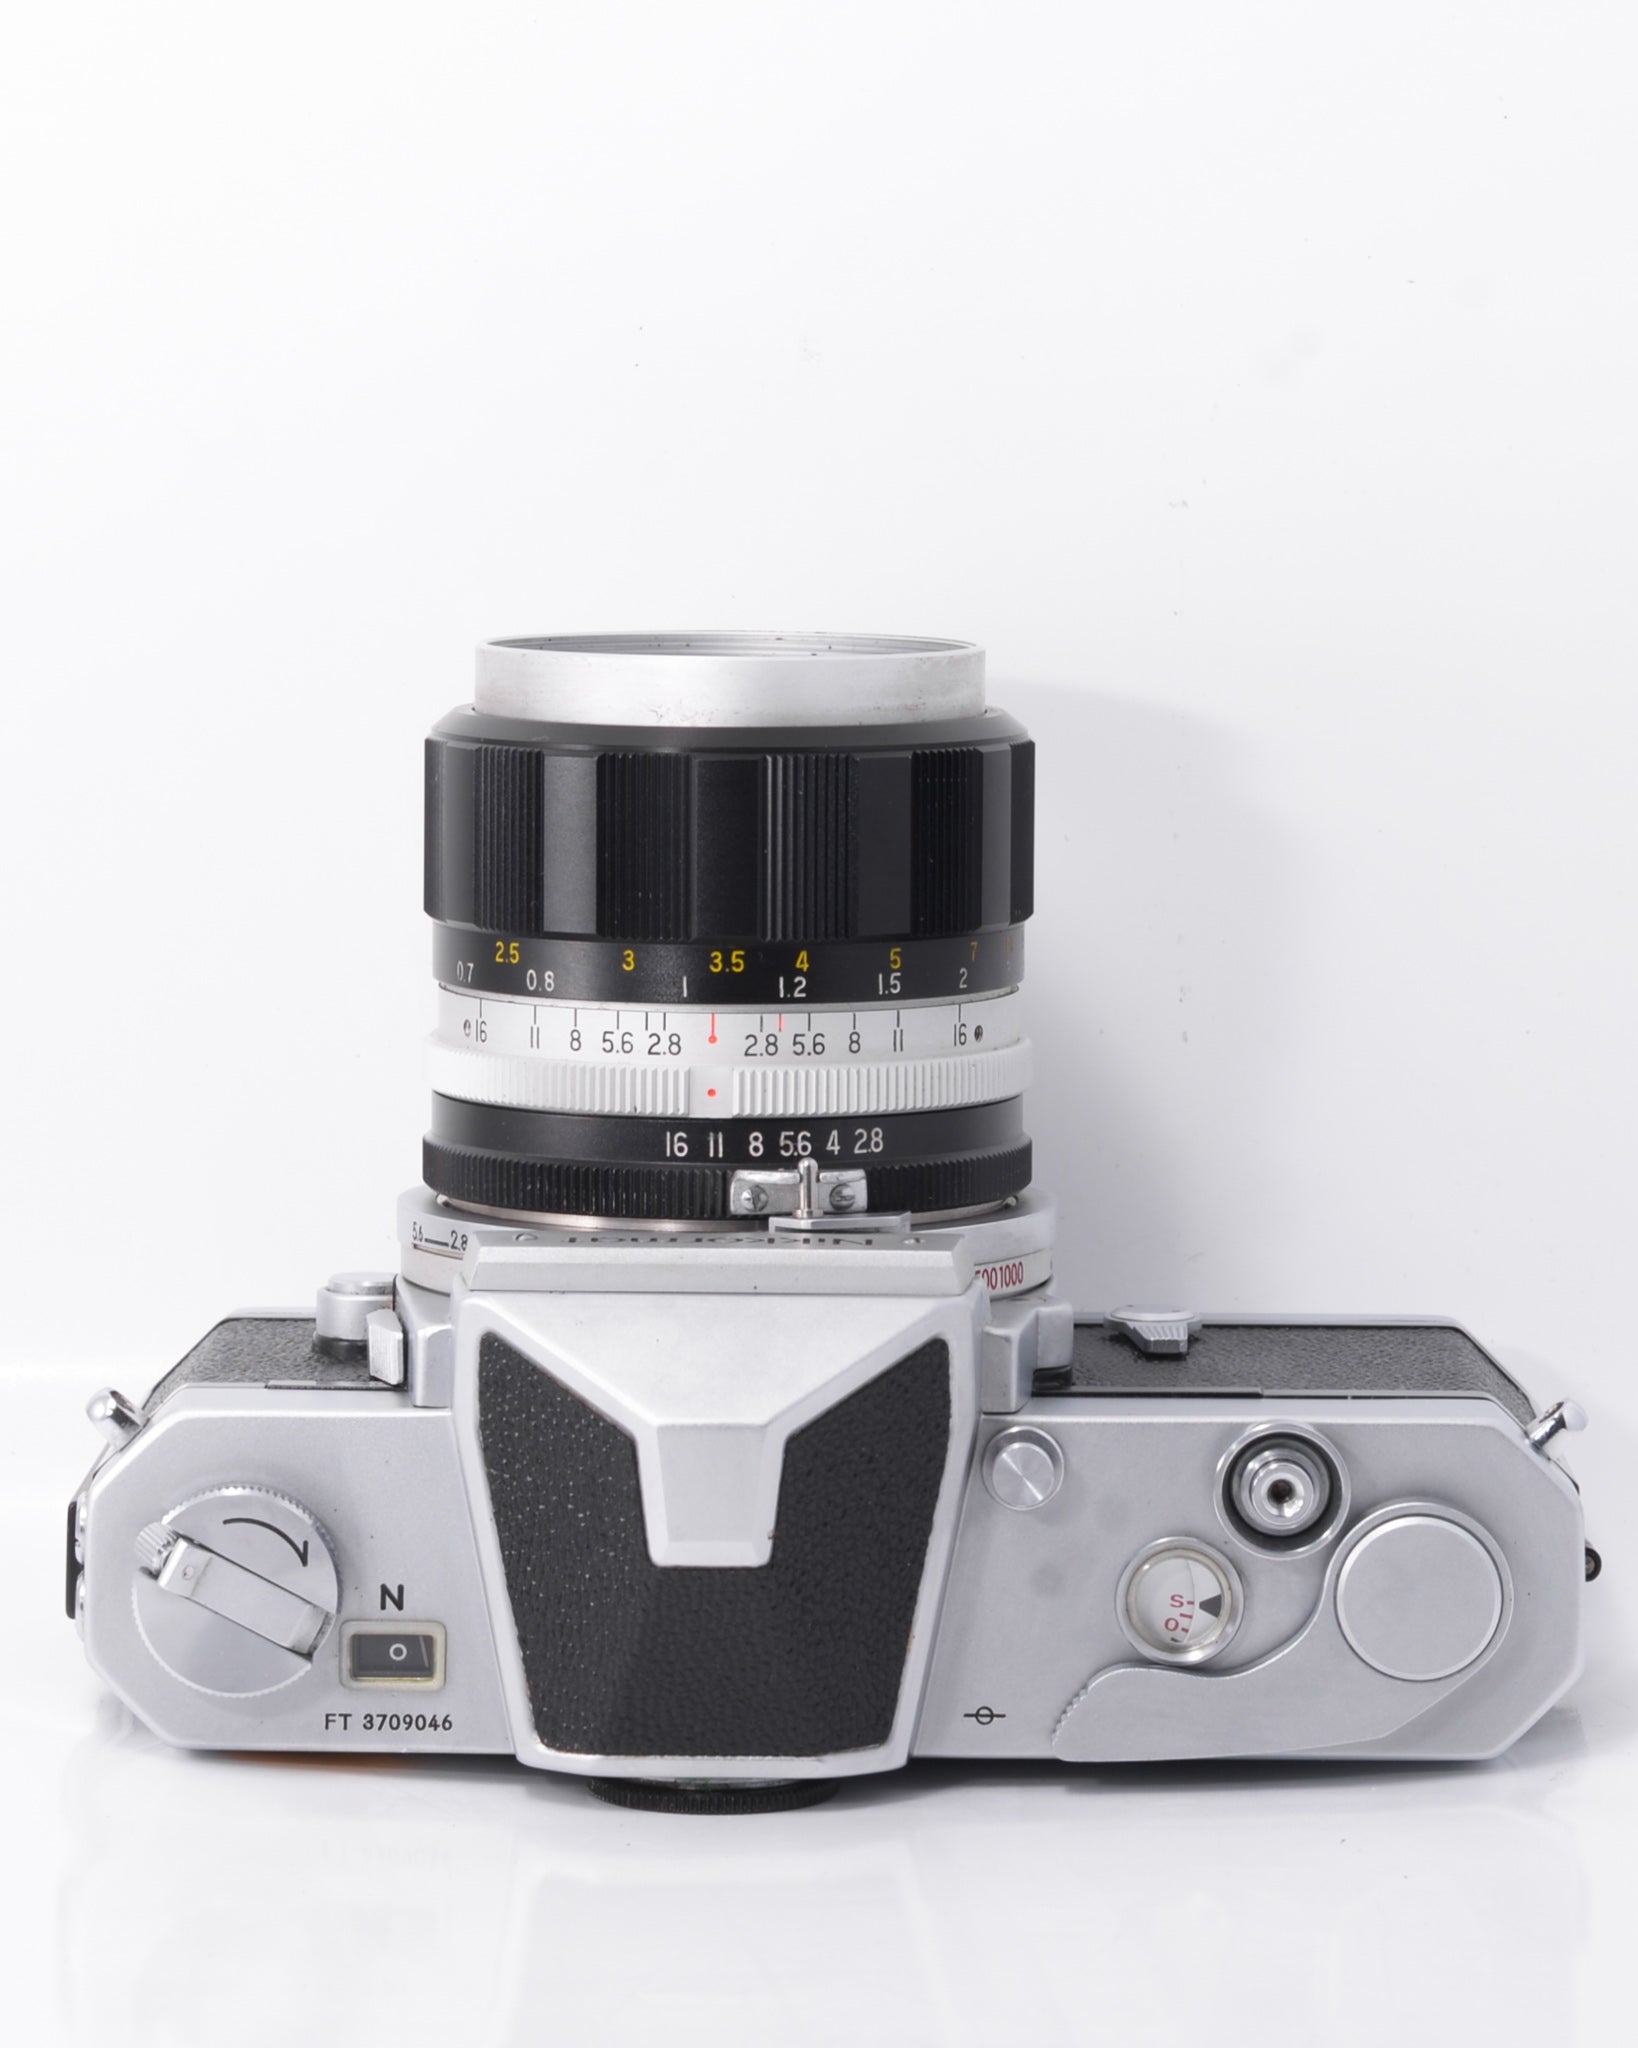 Nikon Nikomat FTN 35mm SLR Film Camera with 35mm f2.8 Lens - Mori 